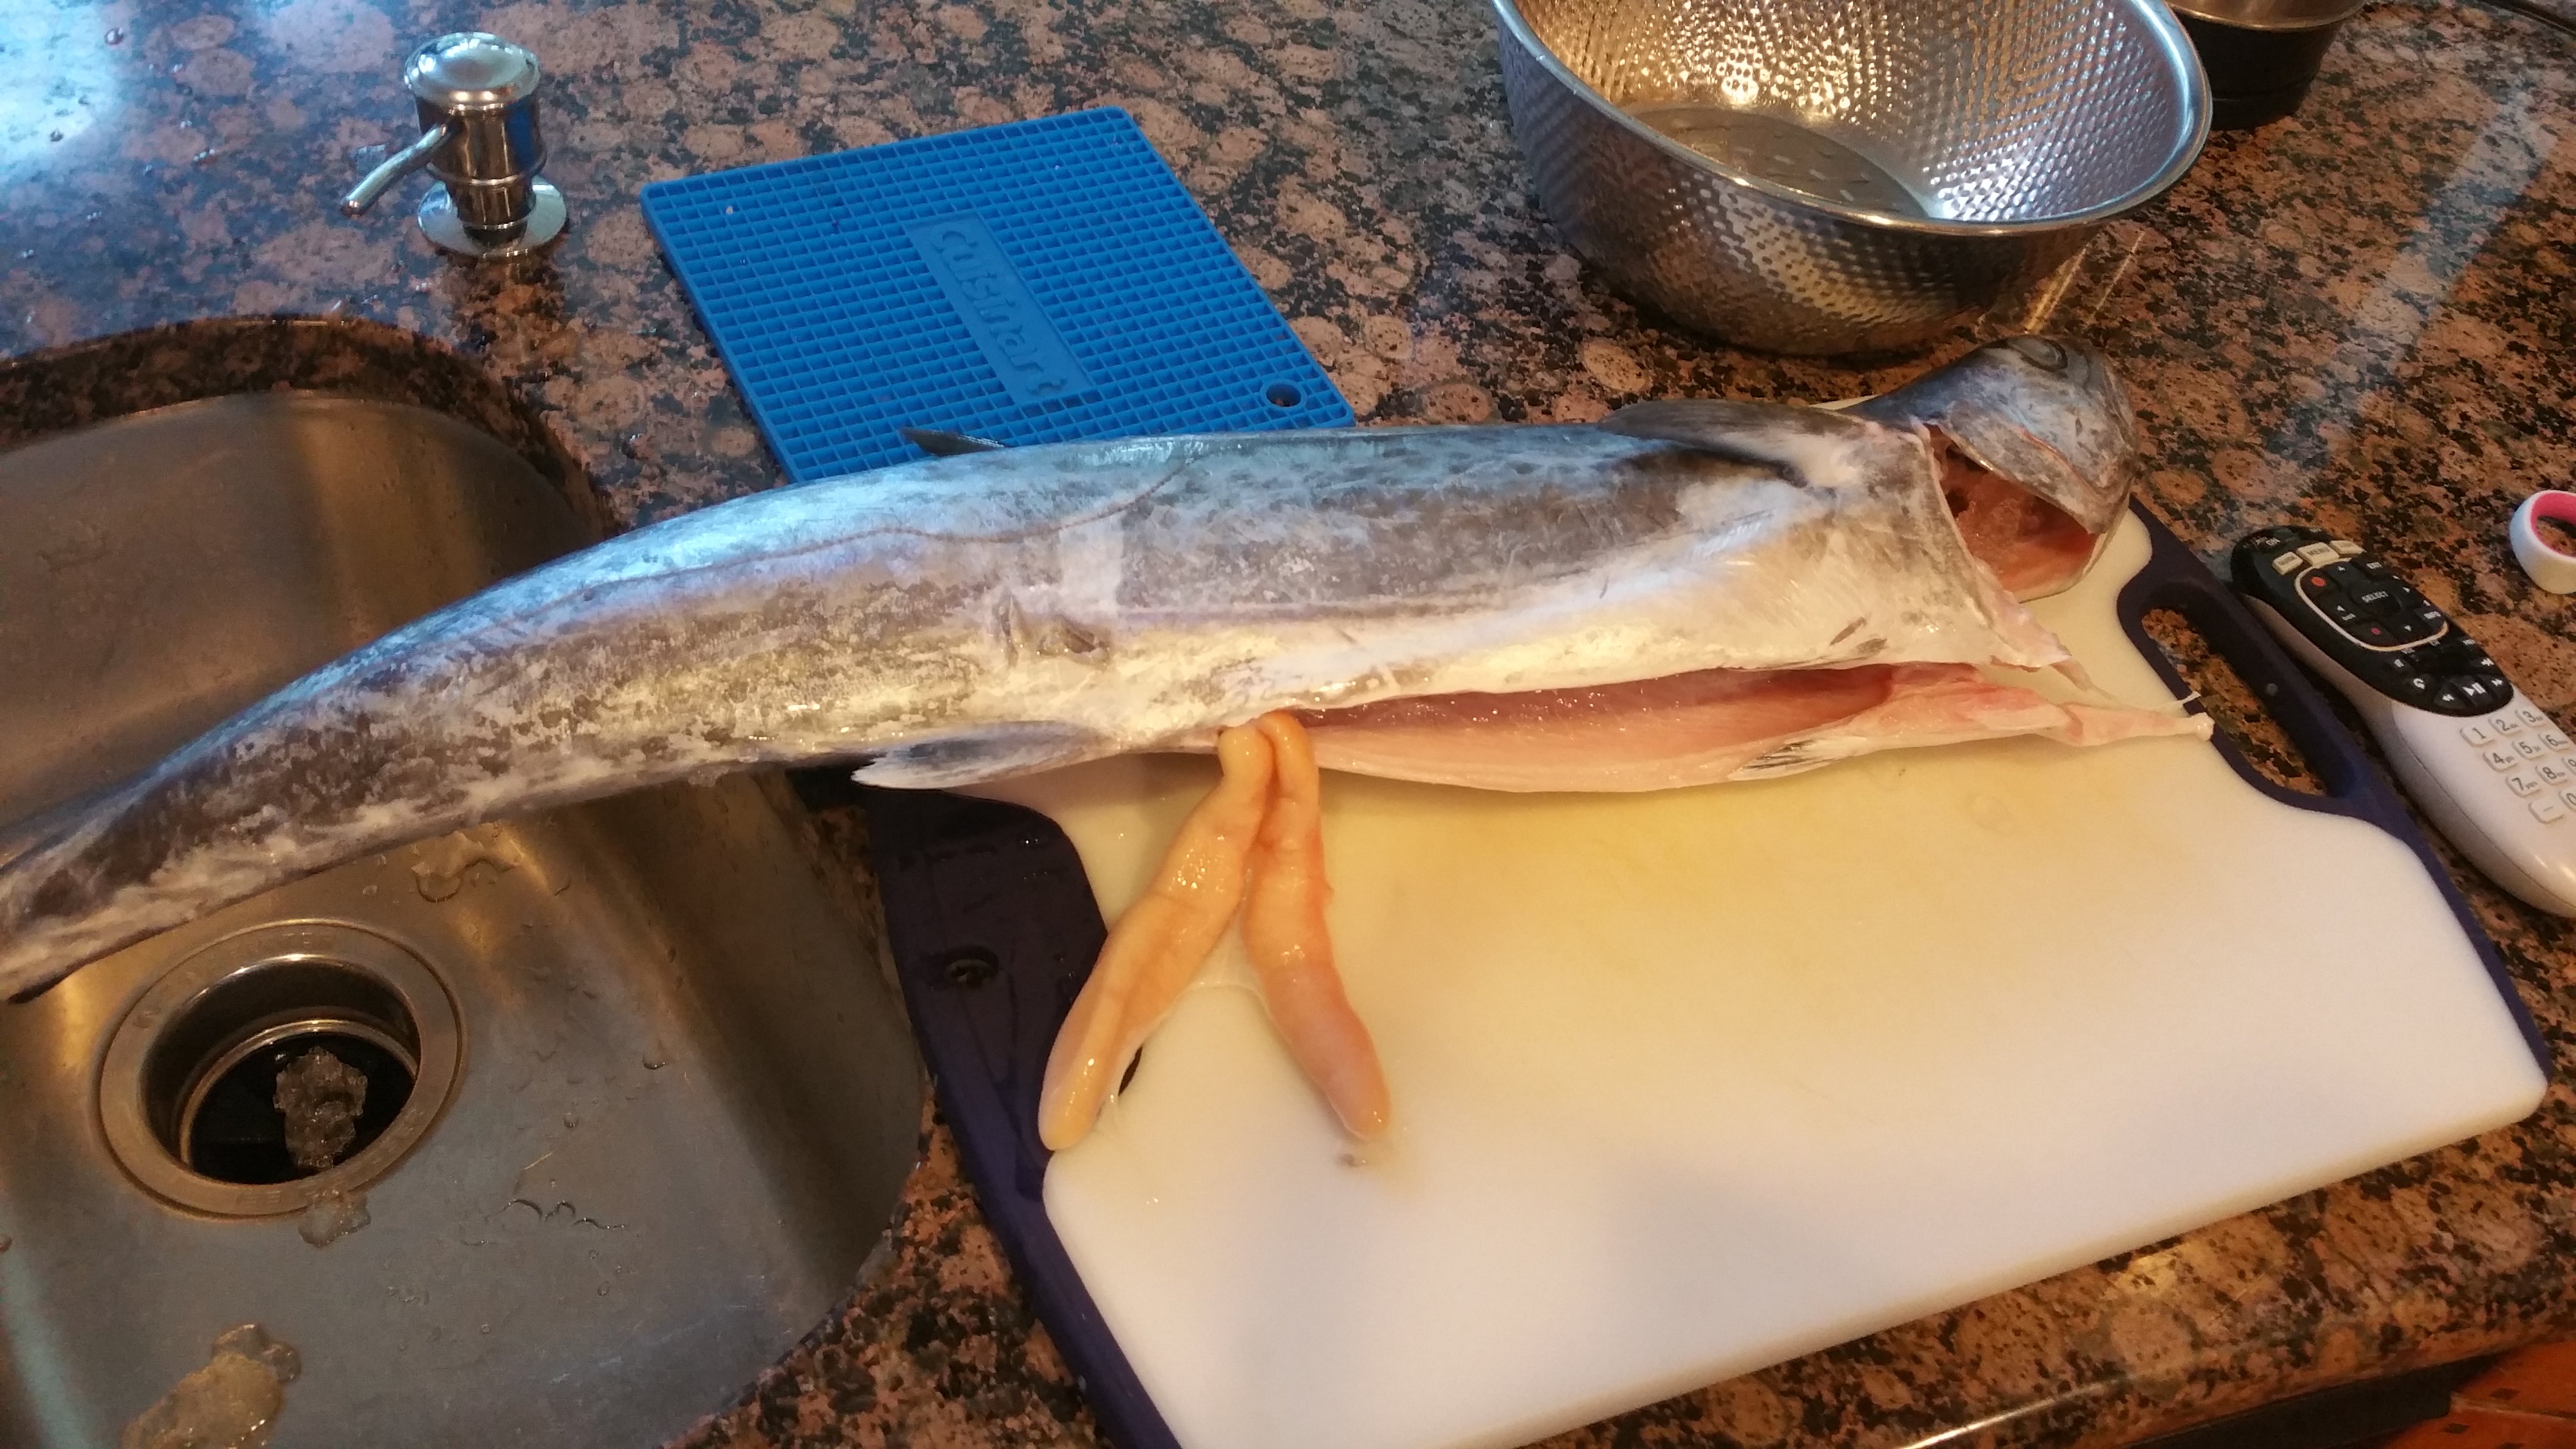 king mackerel smoked king fish